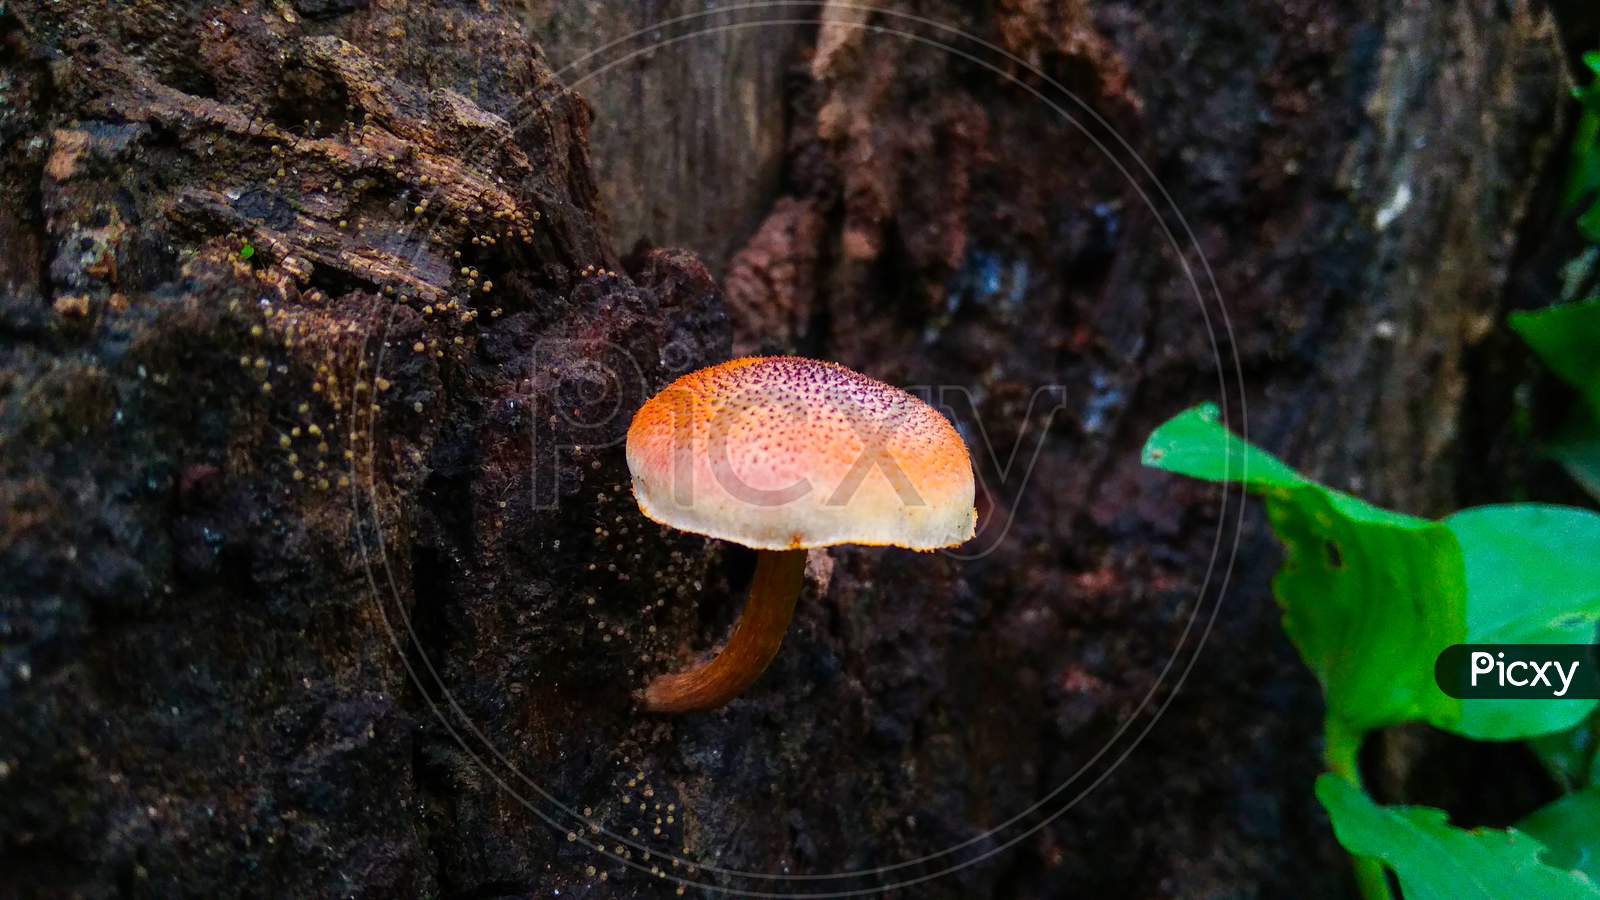 The Orange Mushroom Grow In The Black Wood Forest, Single Mushroom